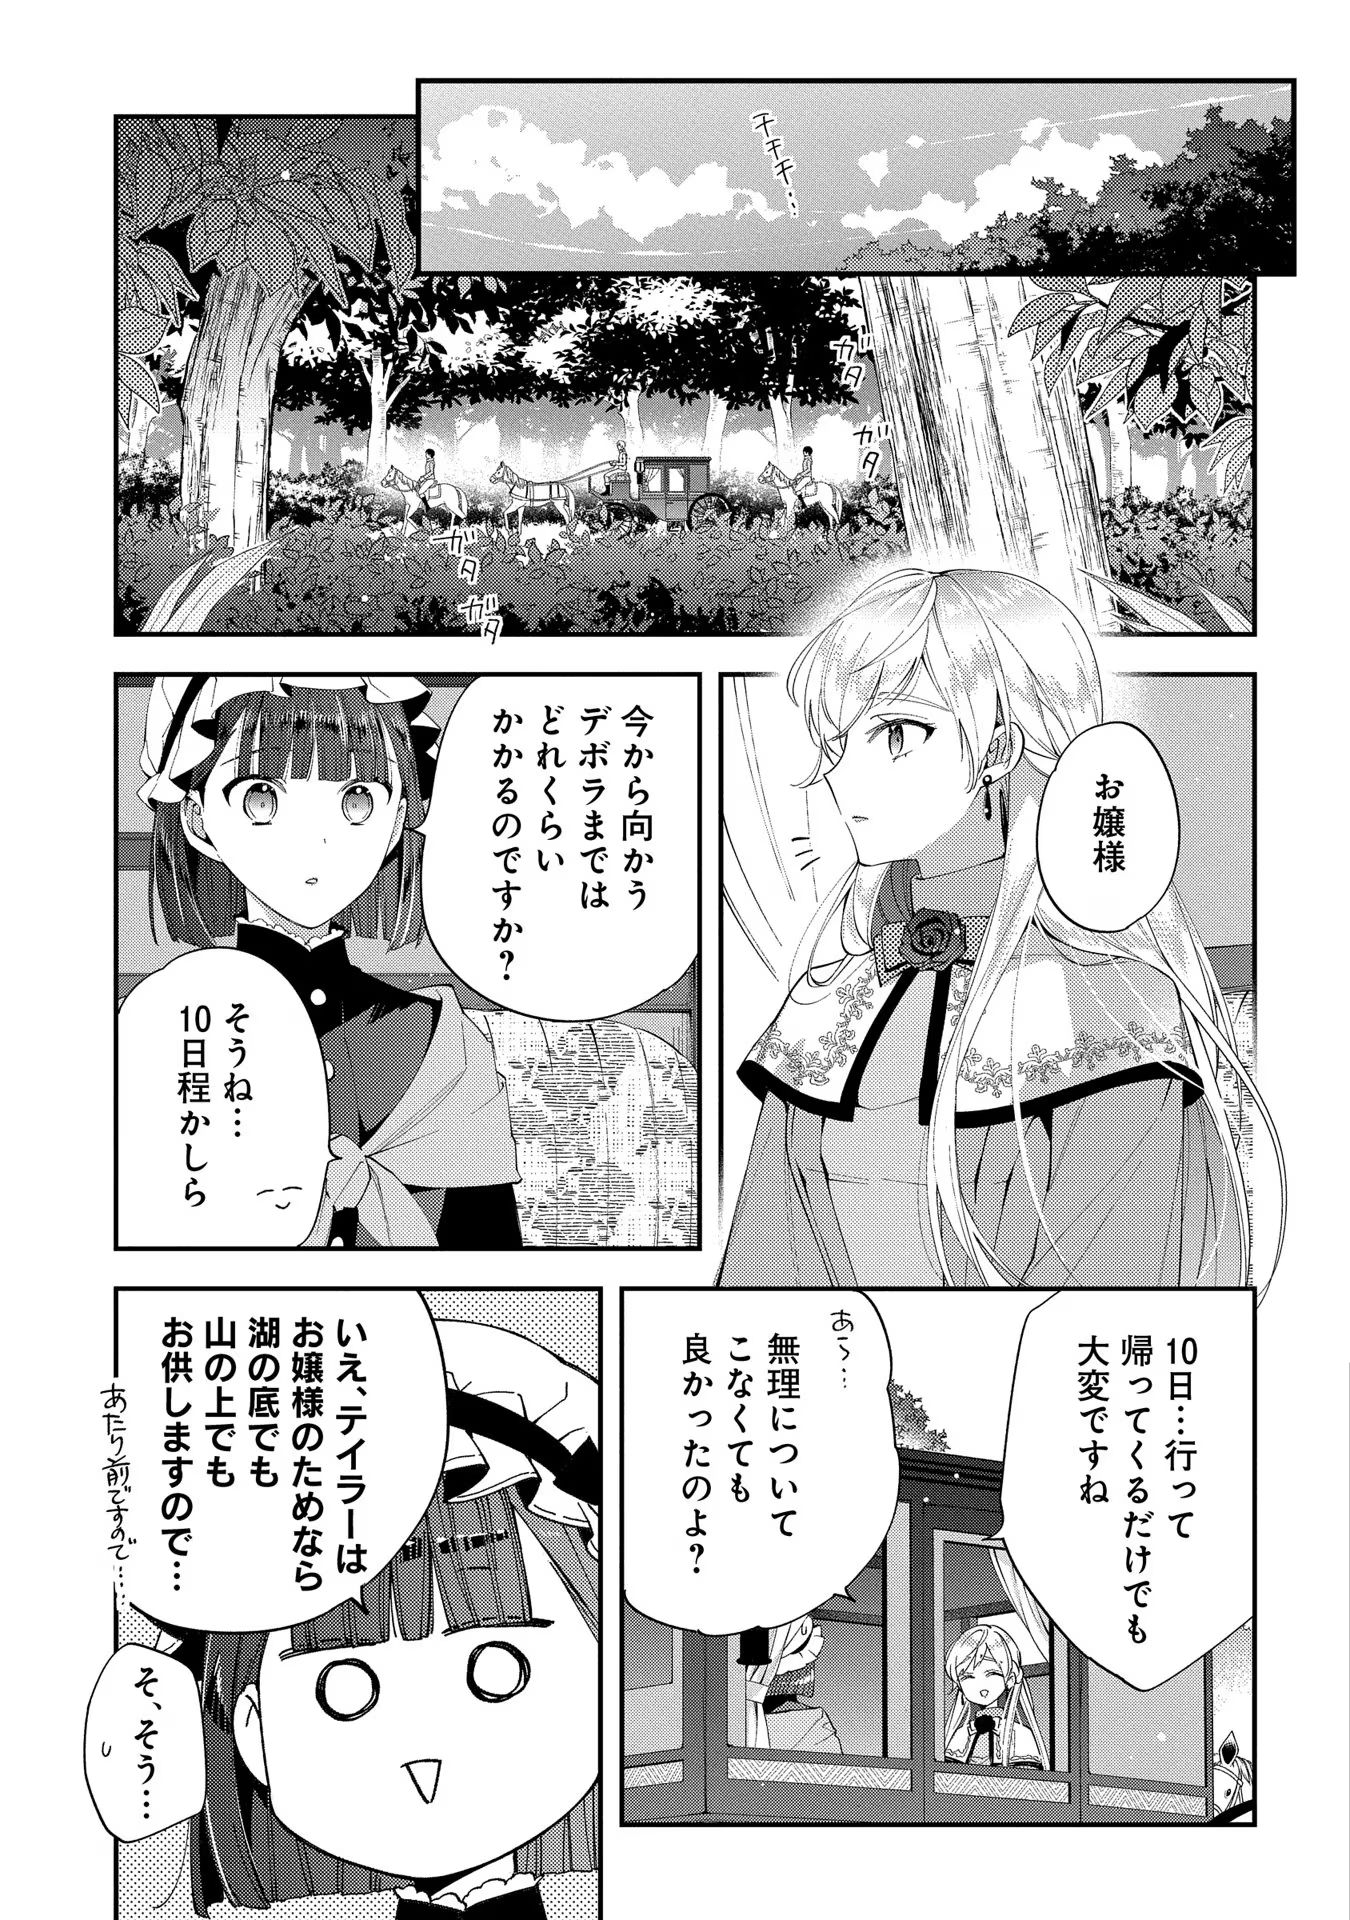 Outaishi ni Konyaku Hakisareta no de, Mou Baka no Furi wa Yameyou to Omoimasu - Chapter 13 - Page 25